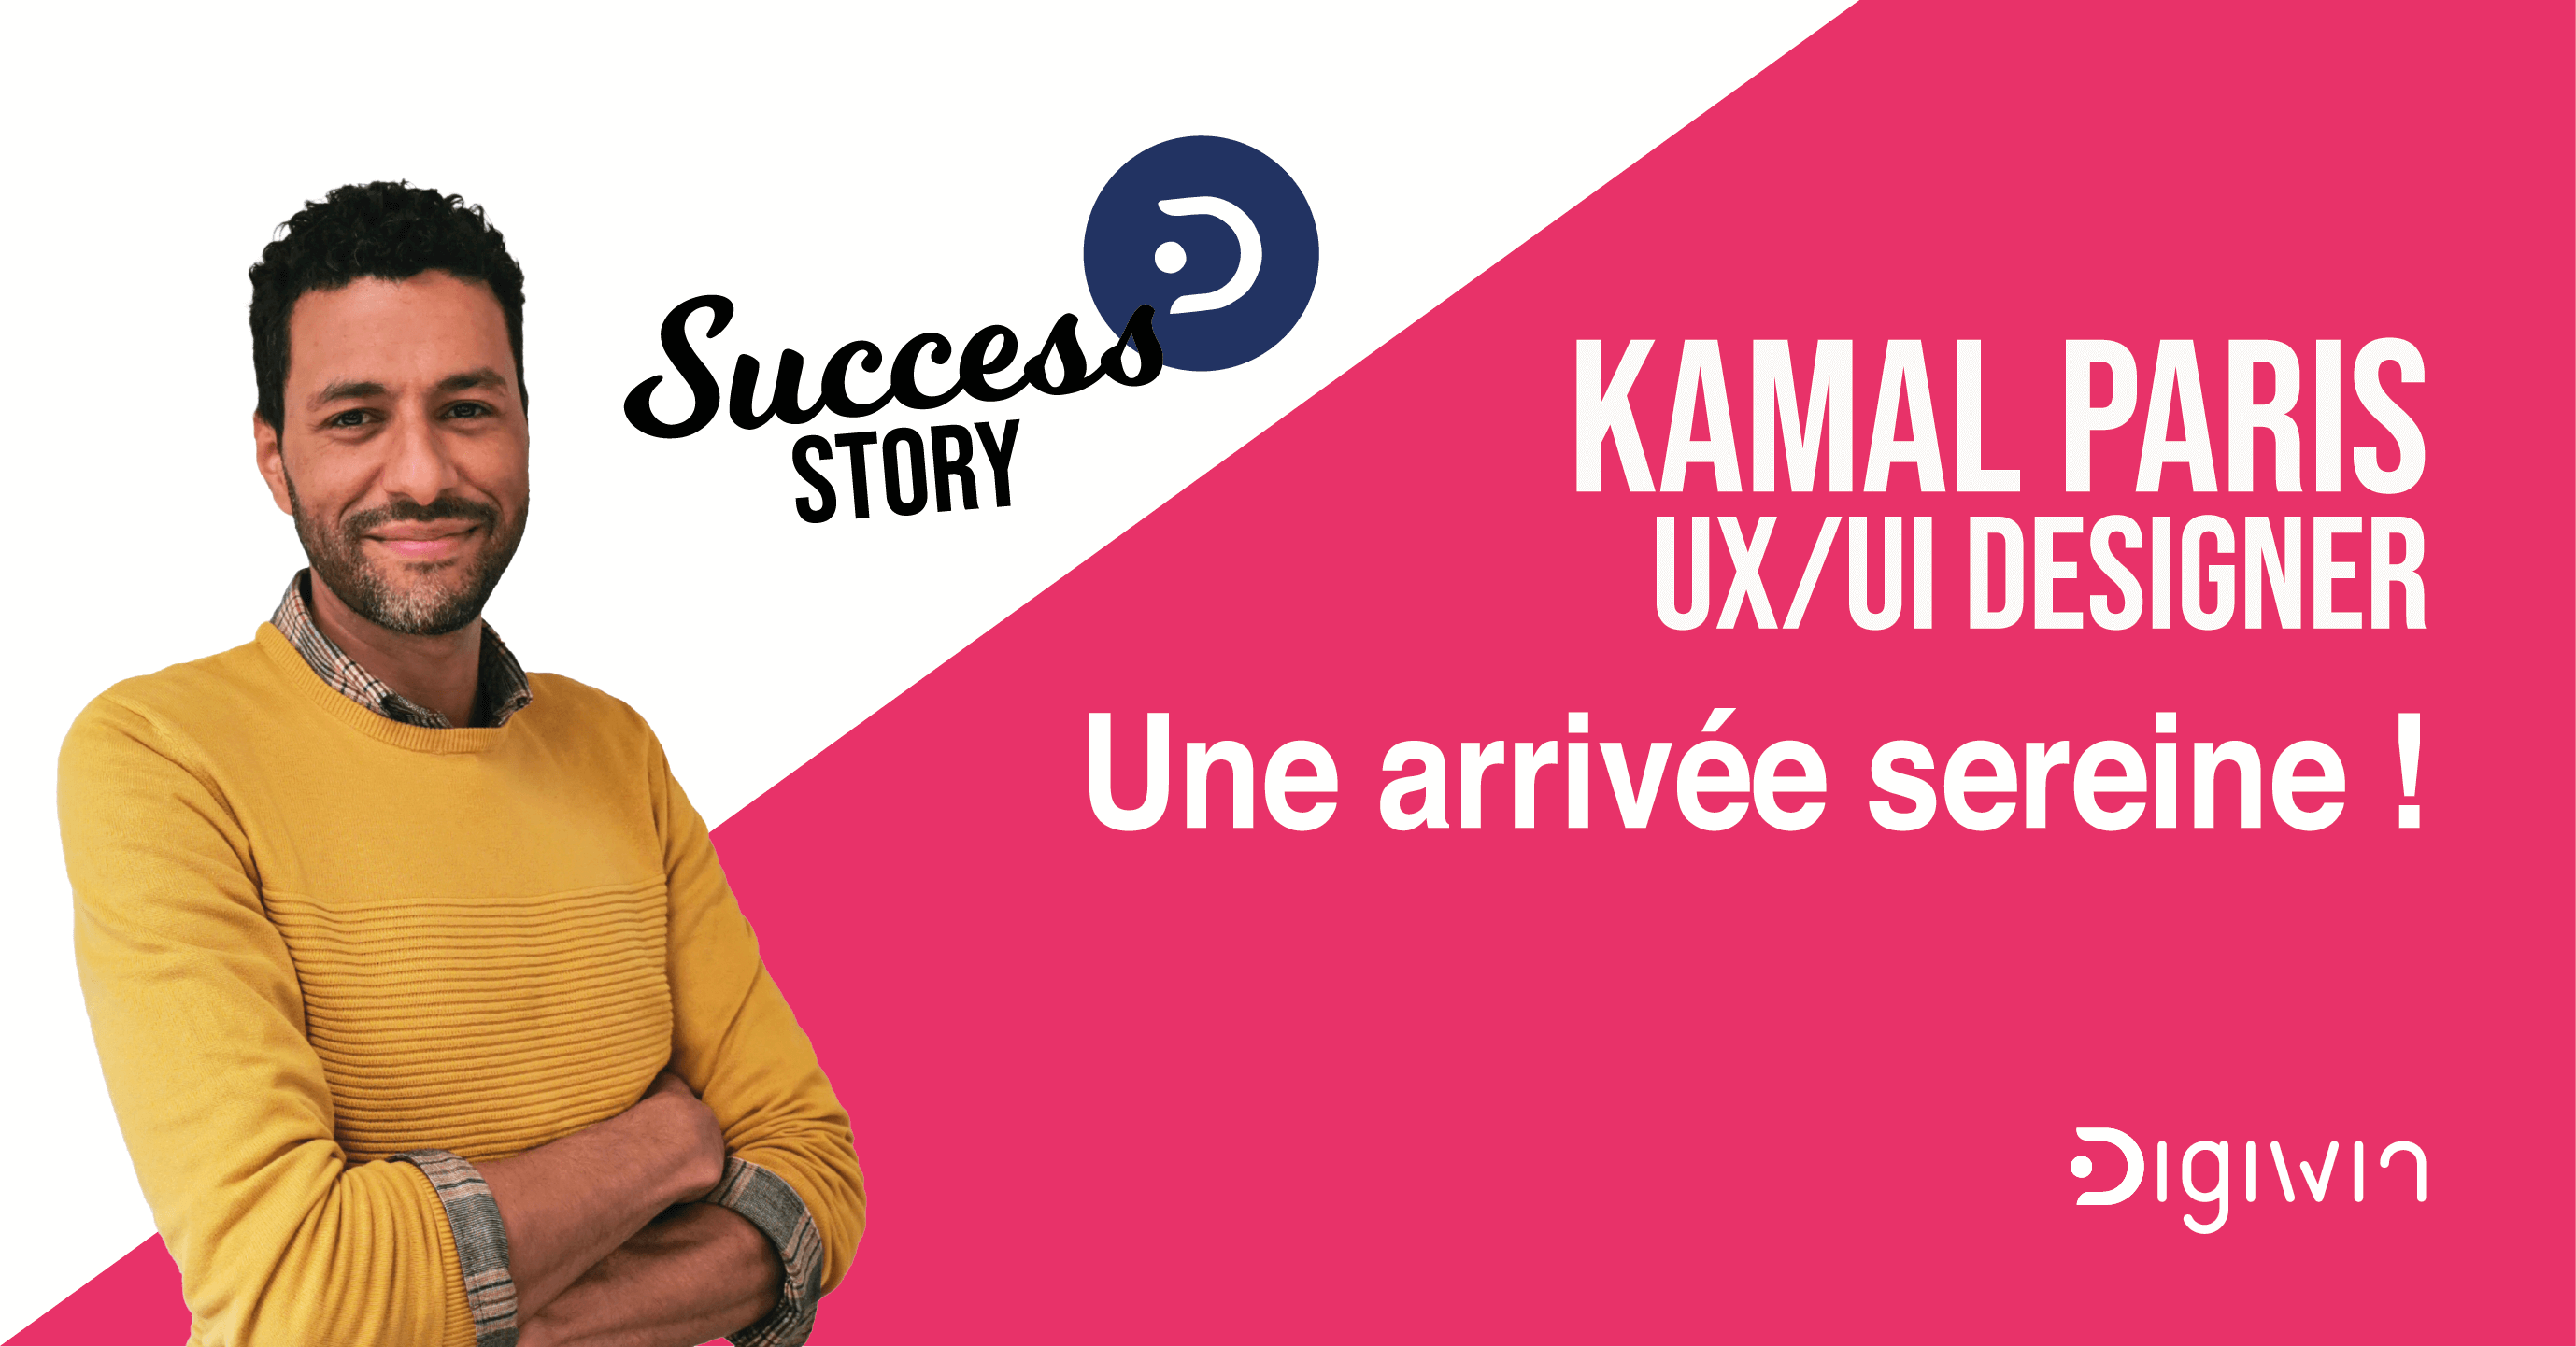 Le succès de l’arrivée sereine de Kamal, UX / UI Designer